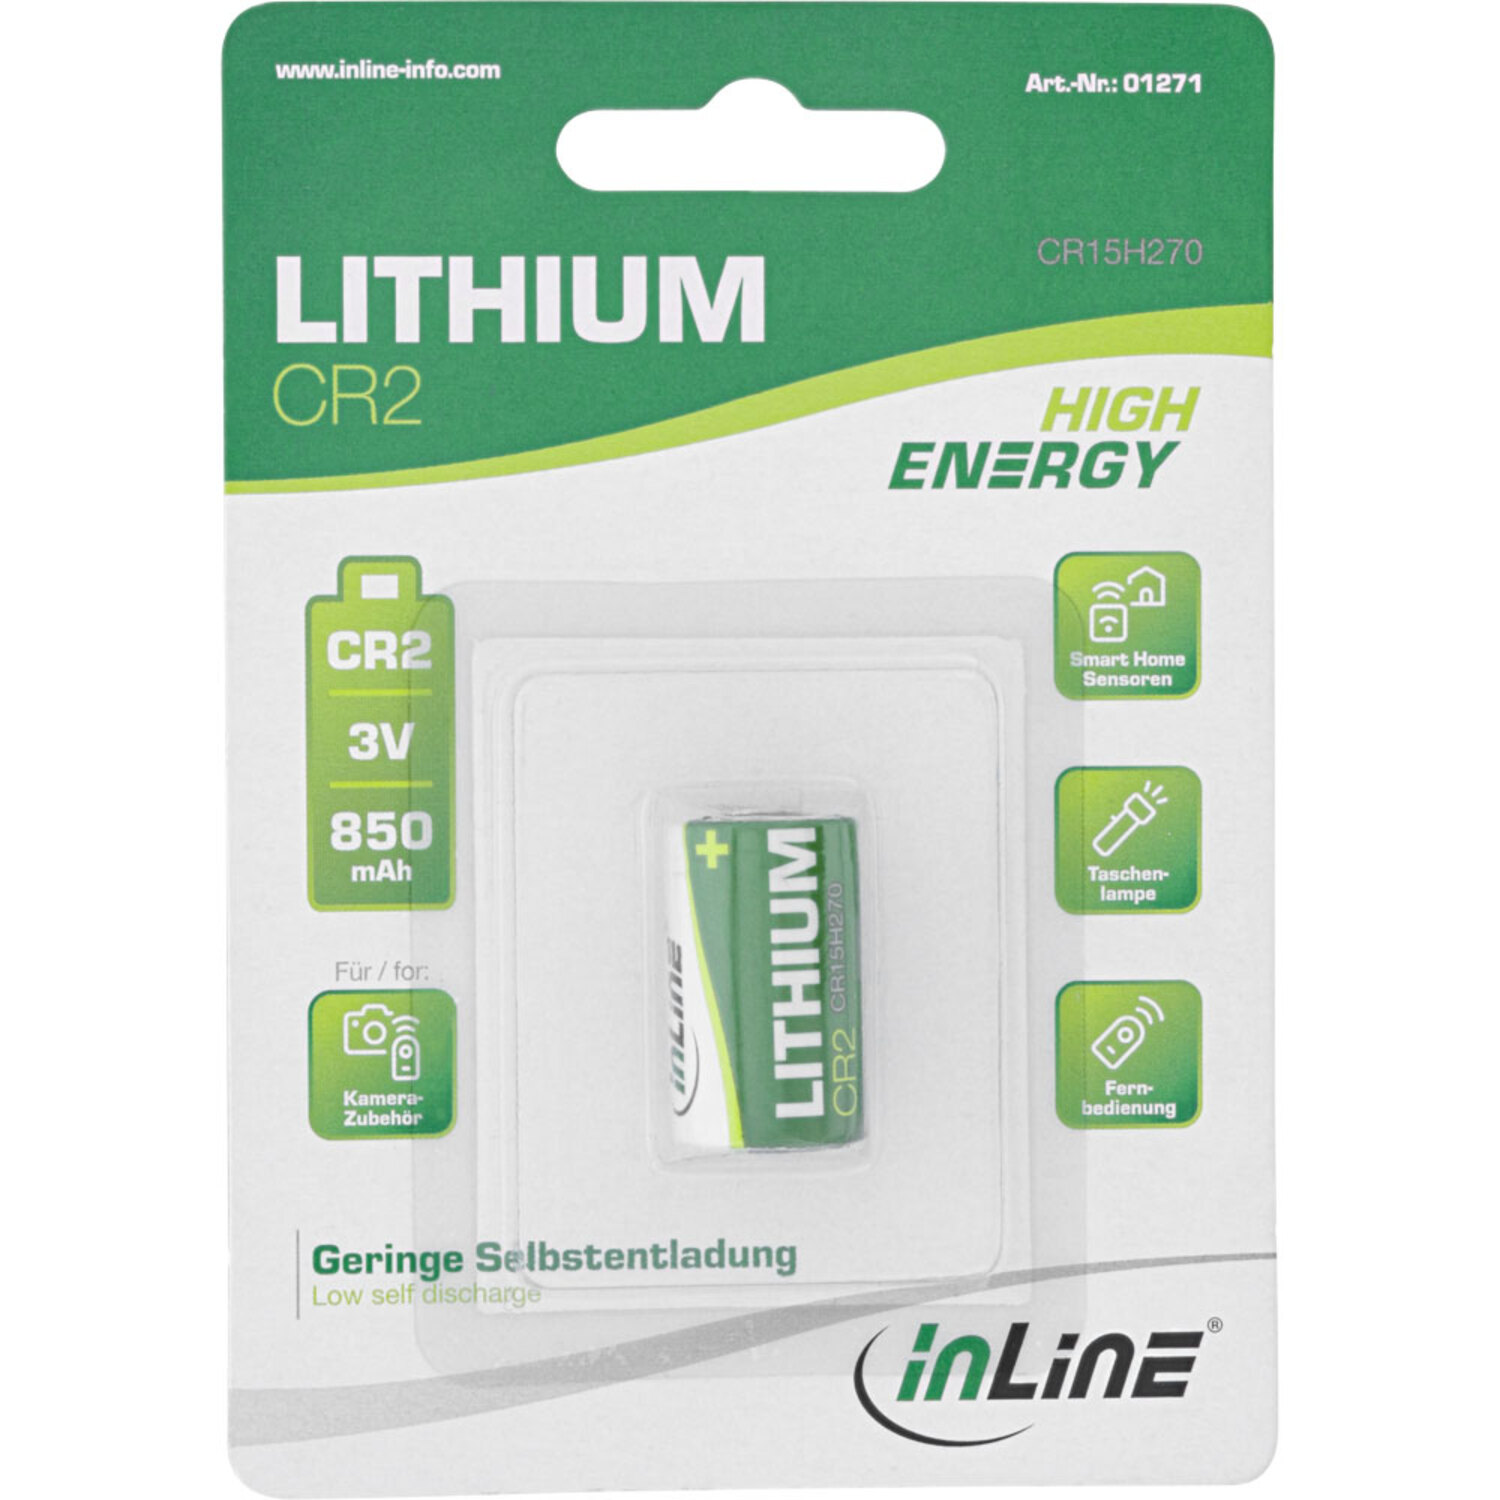 INLINE InLine® Lithium High 3V Batterien Batterie Batterien / 850mAh, Fotobatterie, Energy CR2